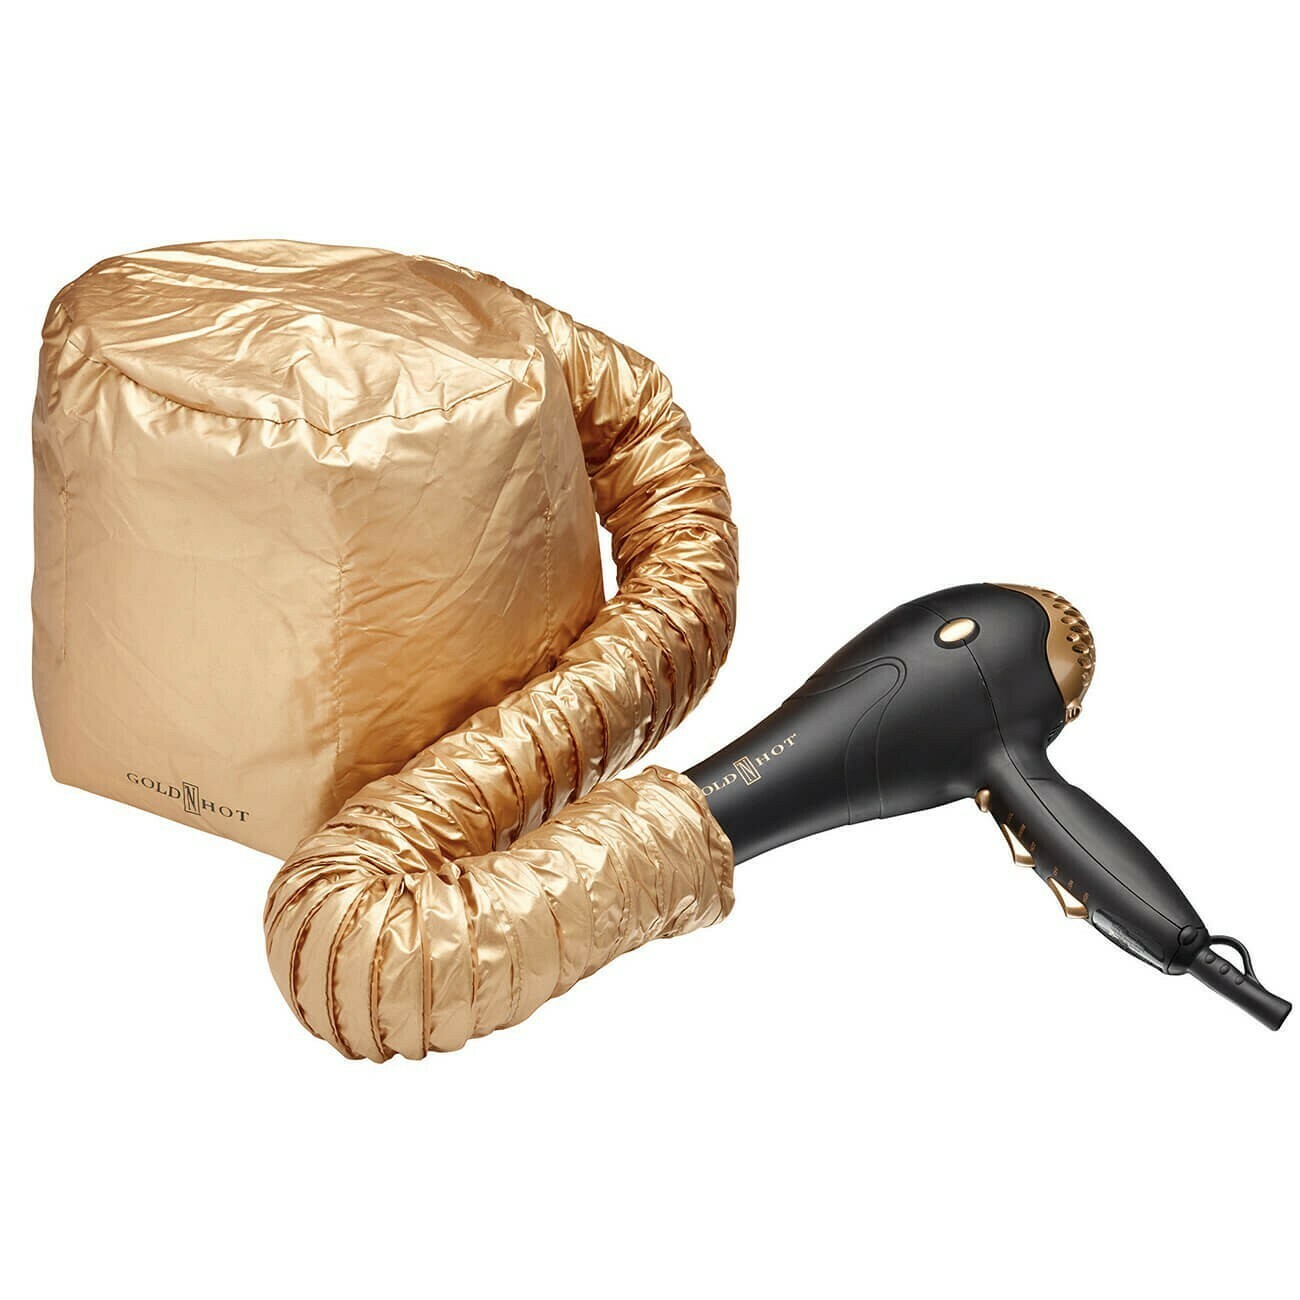 Gold 'N Hot Jet Bonnet Dryer Attachment